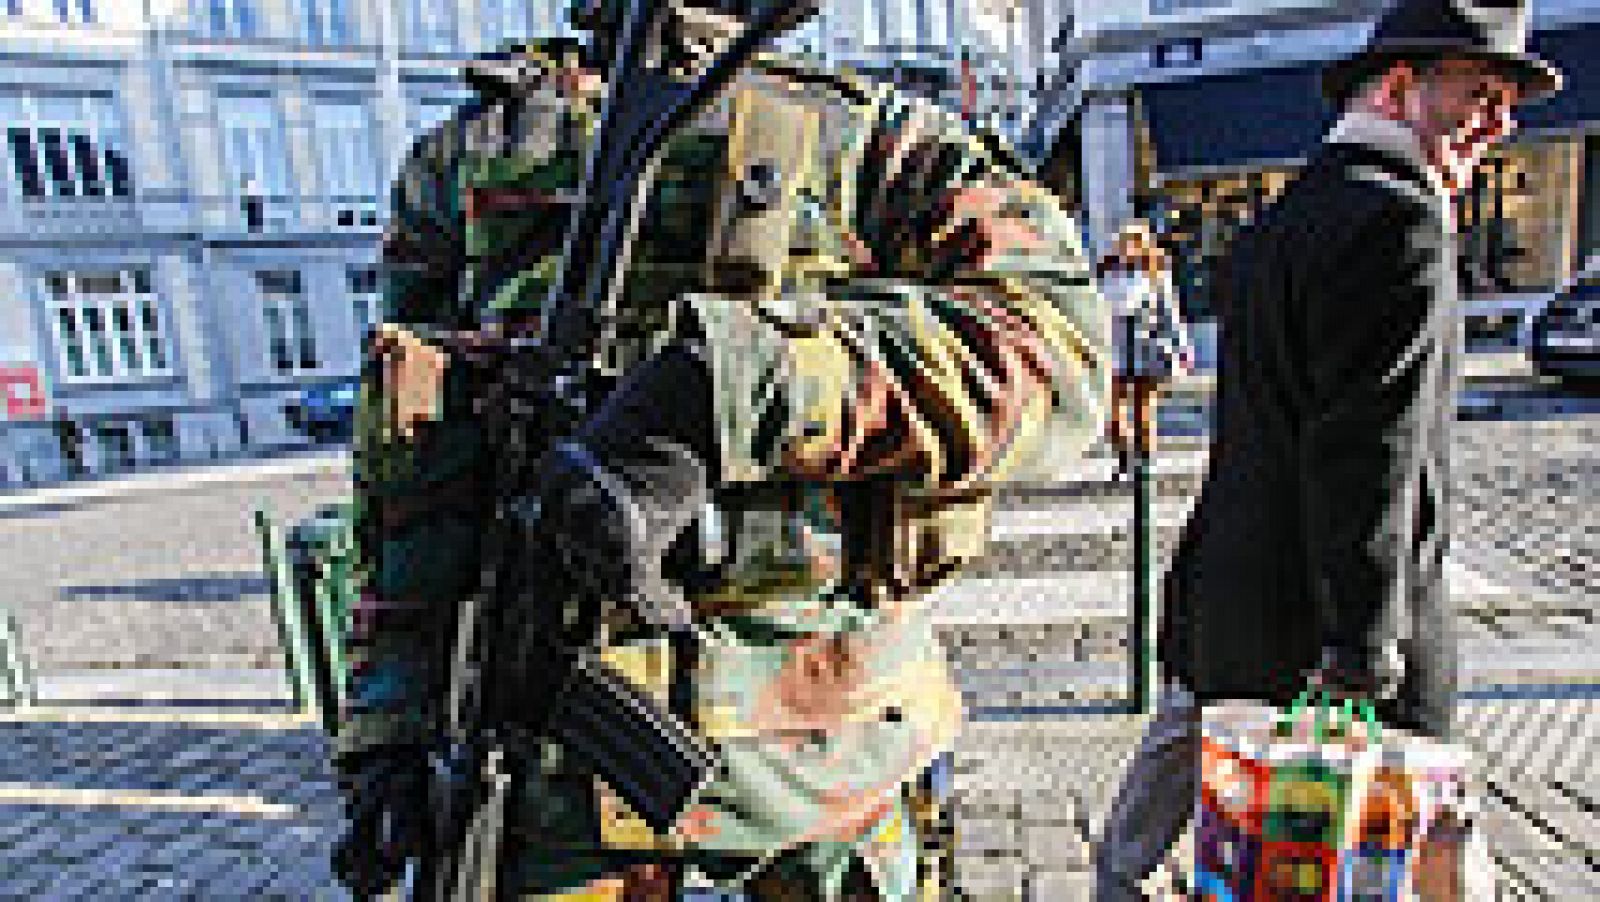  La policía federal belga lleva a cabo una nueva operación antiterrorista que ha incluido 22 registros en todo el país y al menos cuatro detenciones, informó la fiscalía federal. Se trata de una "operación de envergadura", dentro de una investigación antiterrorista ligada a la problemática de los viajes de ciudadanos belgas hacia Siria, ha indicado la fiscalía federal.